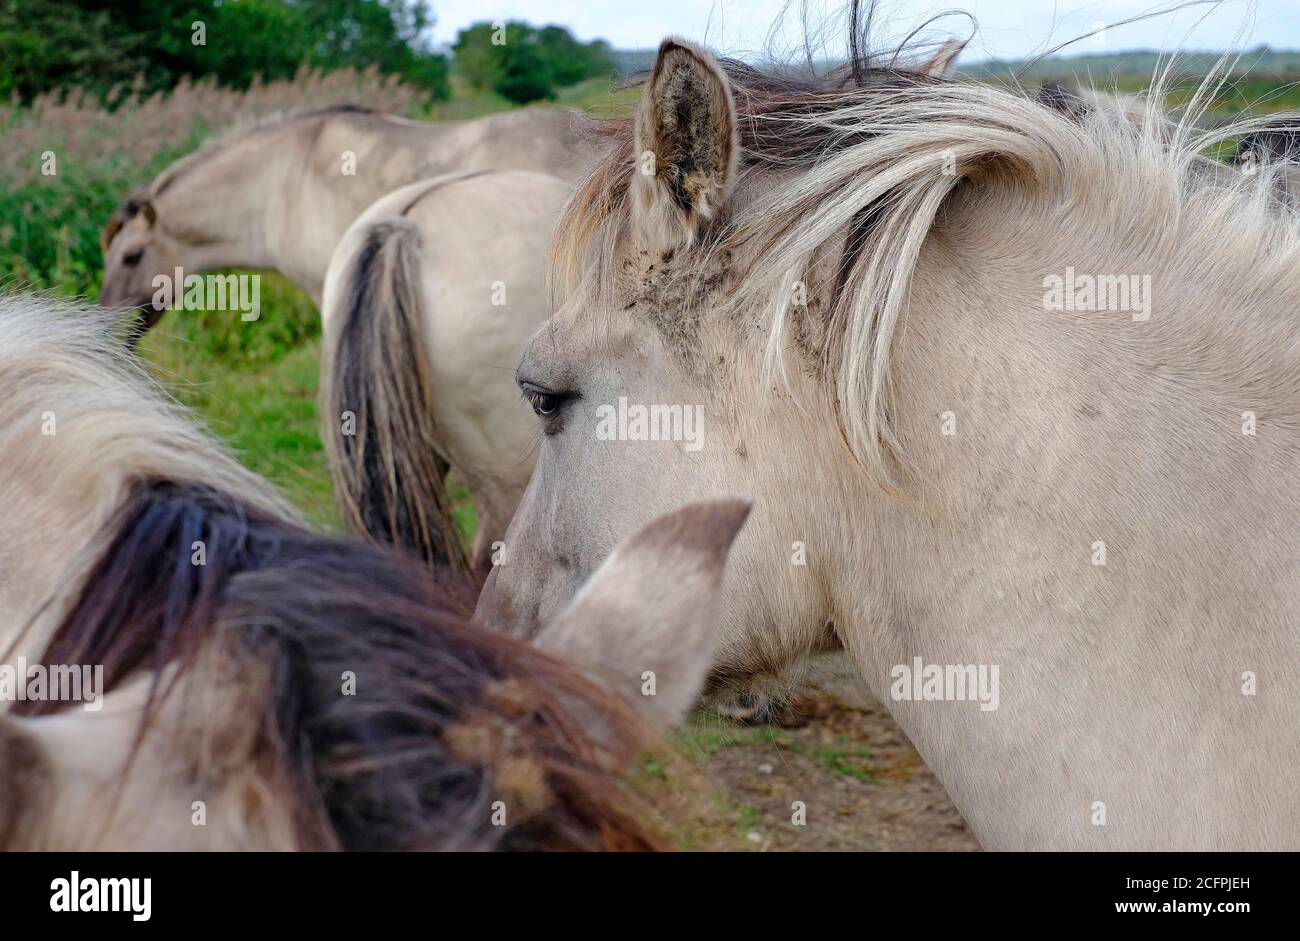 konik polski wild horse at rspb minsmere, suffolk, england Stock Photo